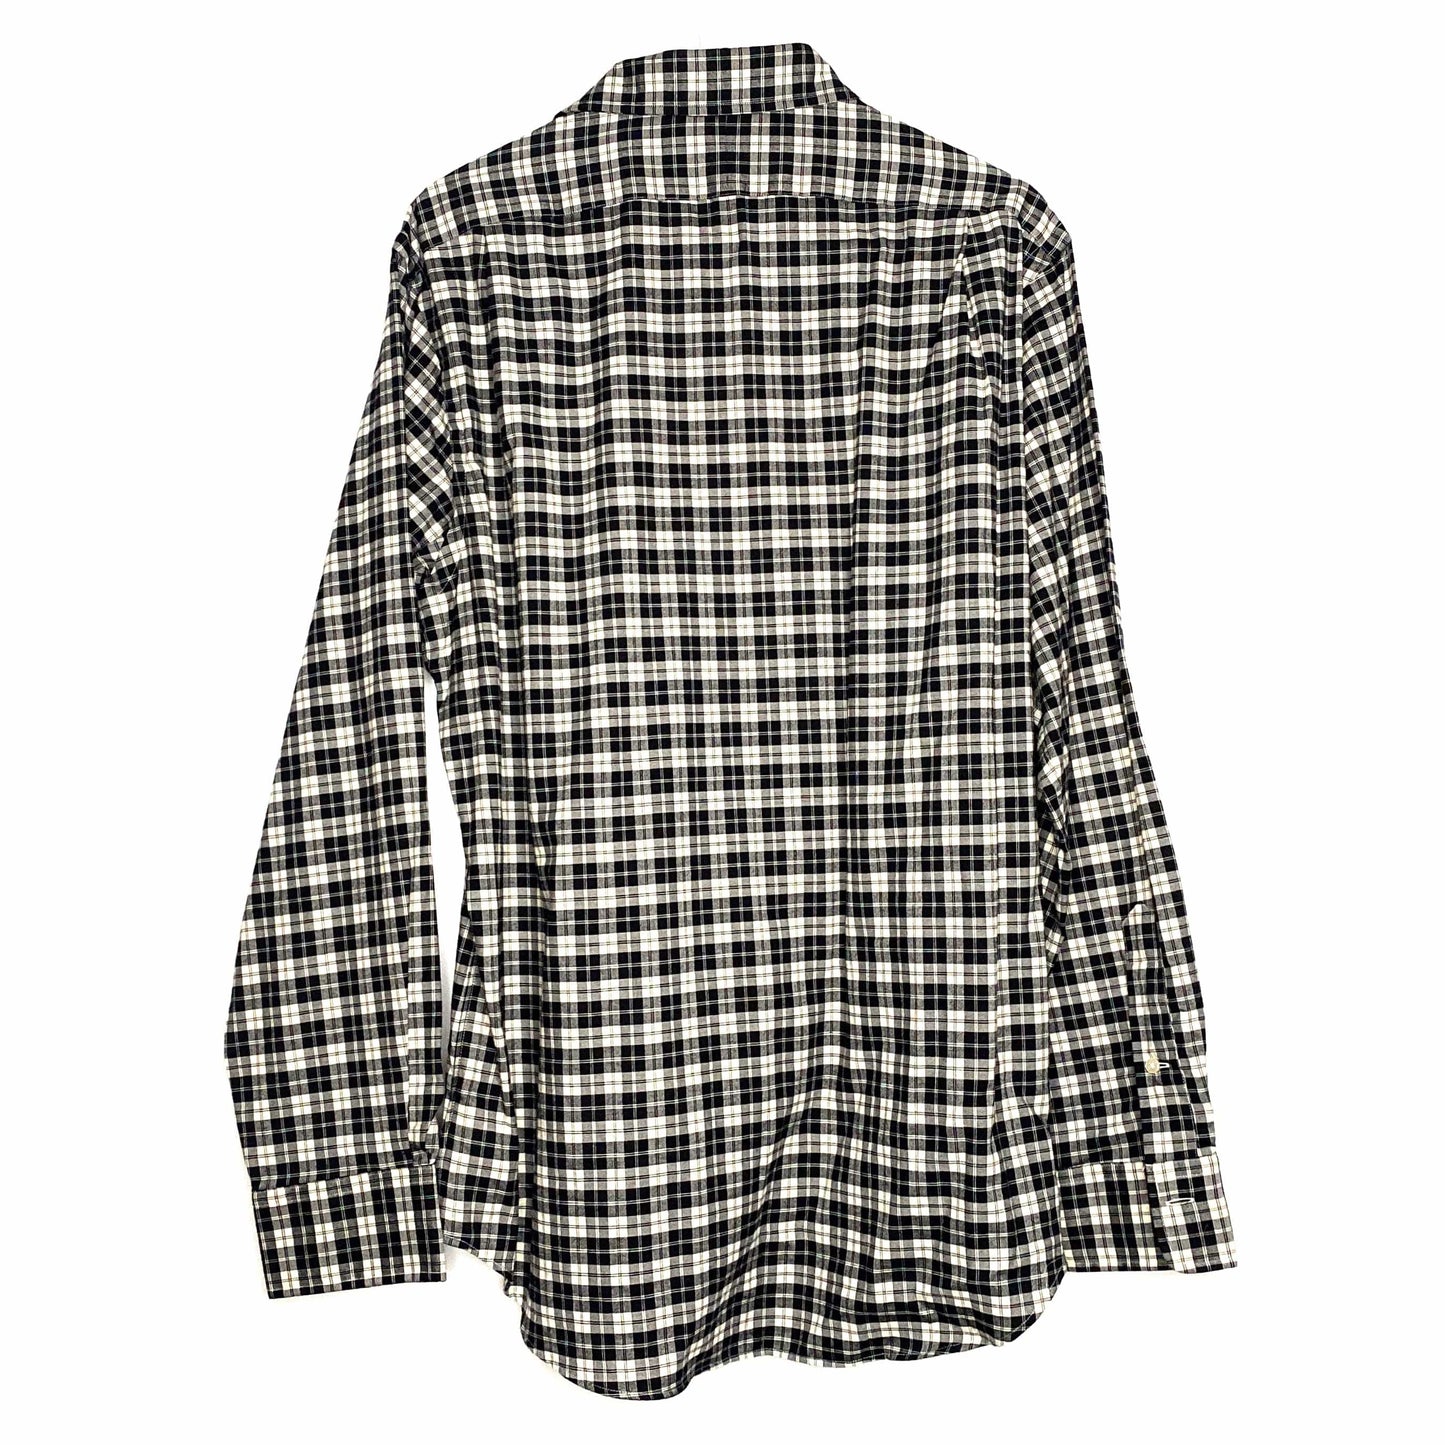 Polo Ralph Lauren Mens Size L Black White Plaid Dress Shirt Button-Up L/s